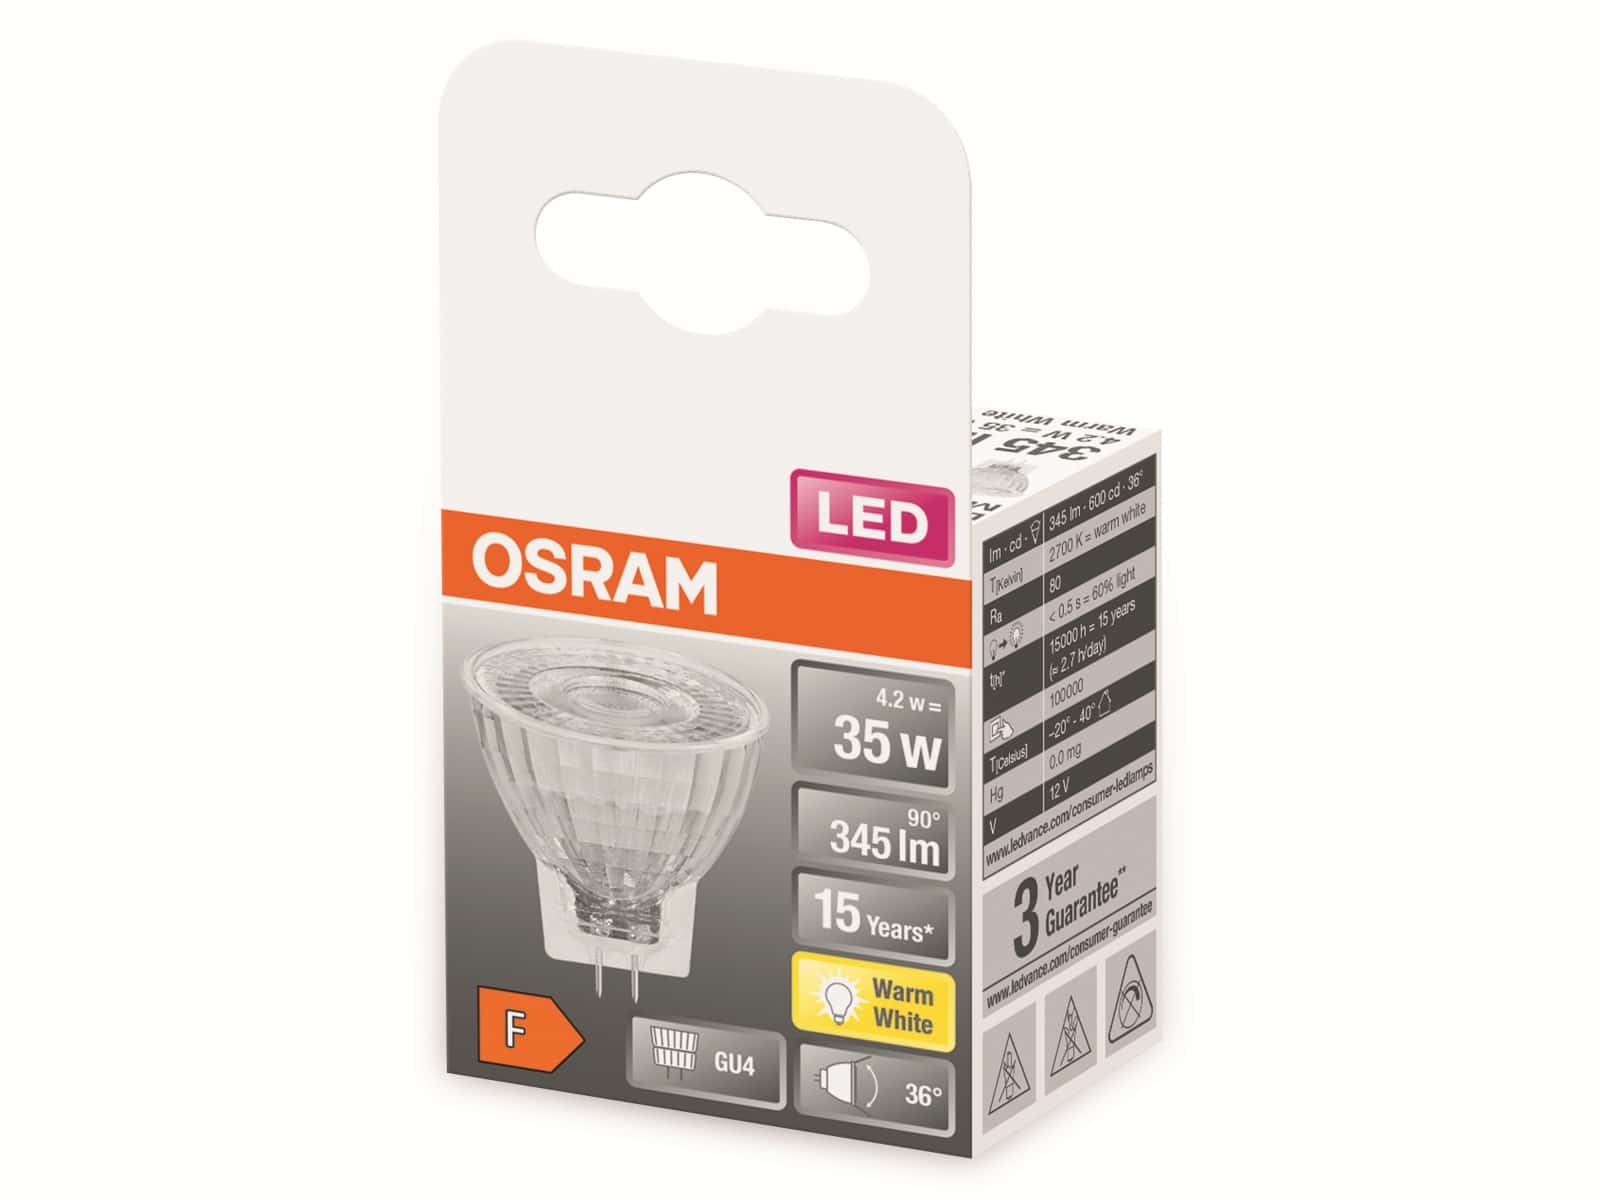 OSRAM LED-Lampe, MR11, GU4, EEK: F, 4,2W, 345lm, 2700K